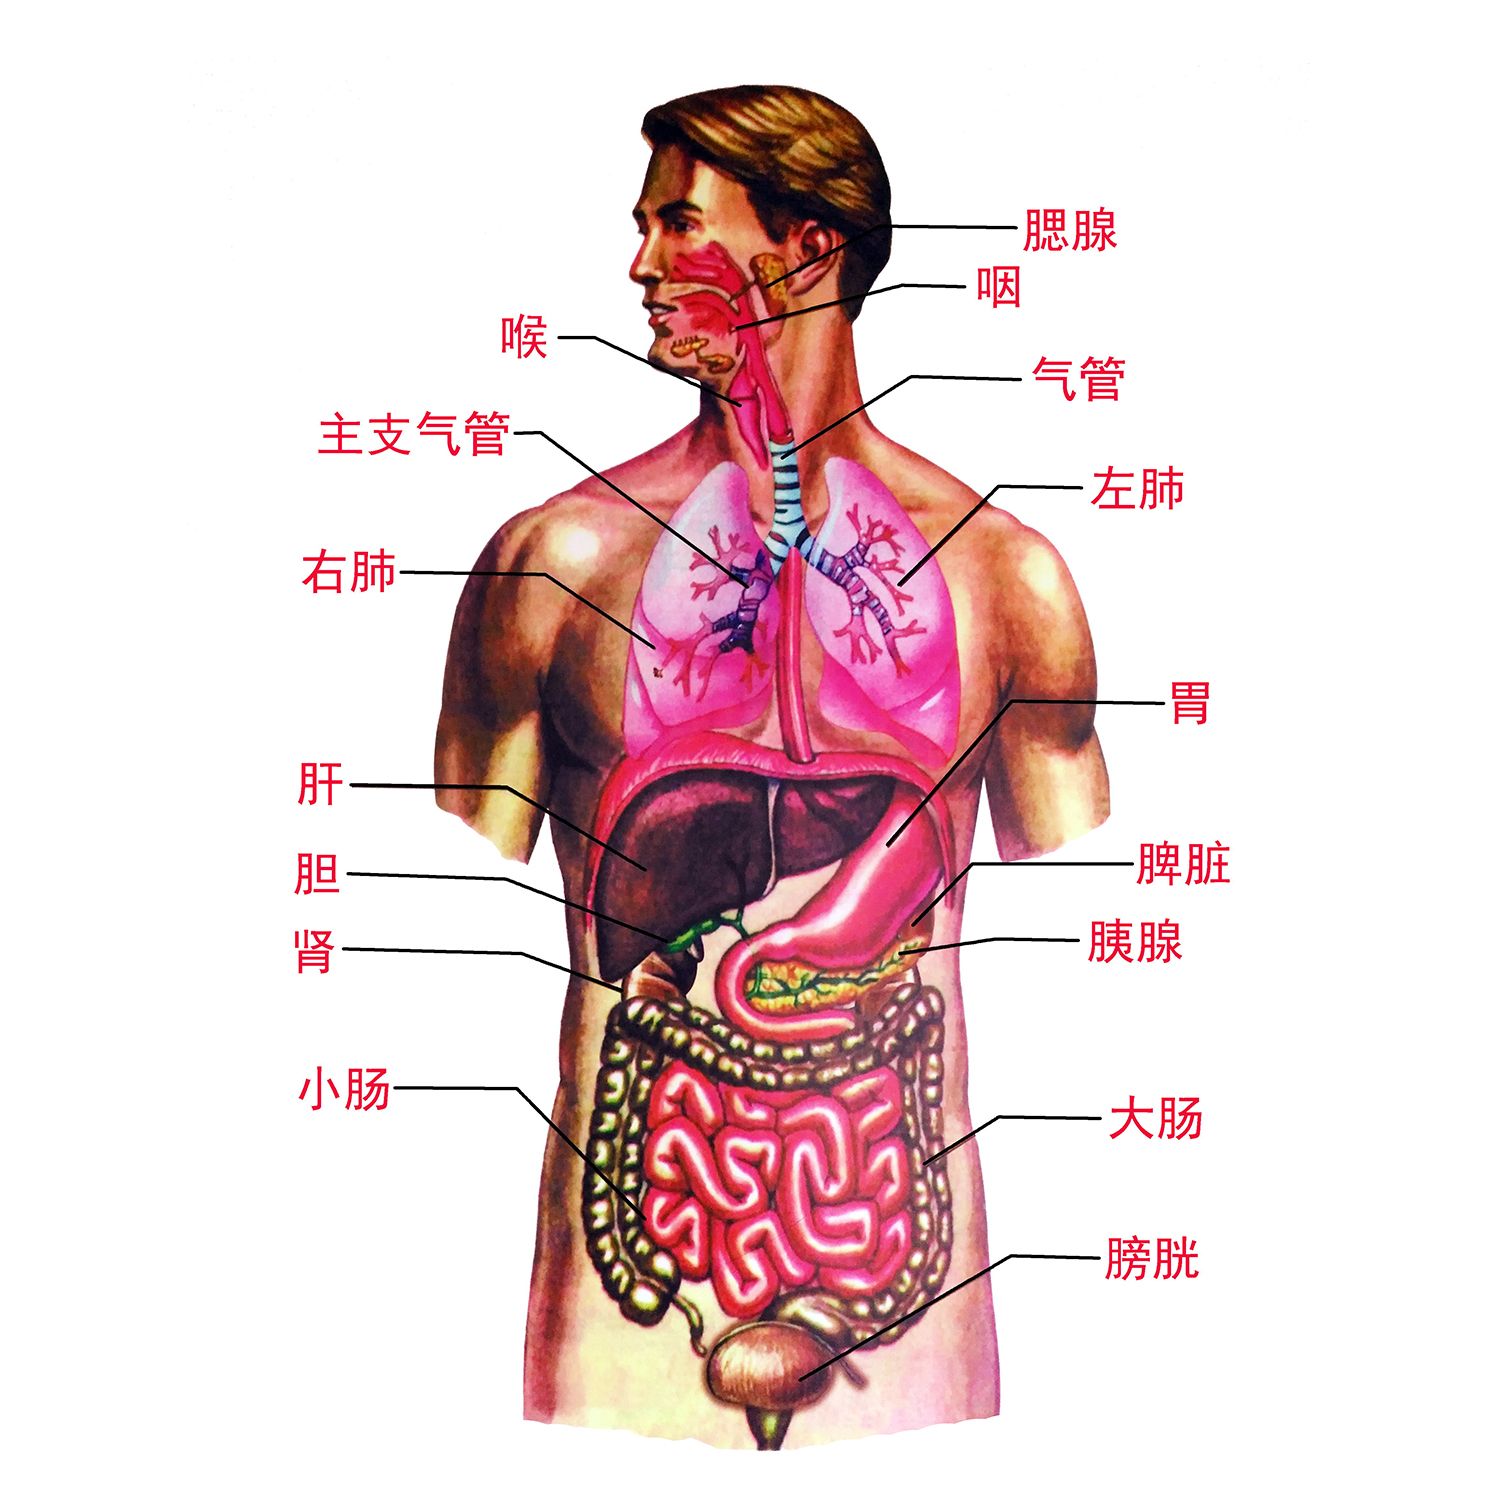 人体内脏解剖系统示意图海报医学宣传挂图人体器官心脏结构图展板